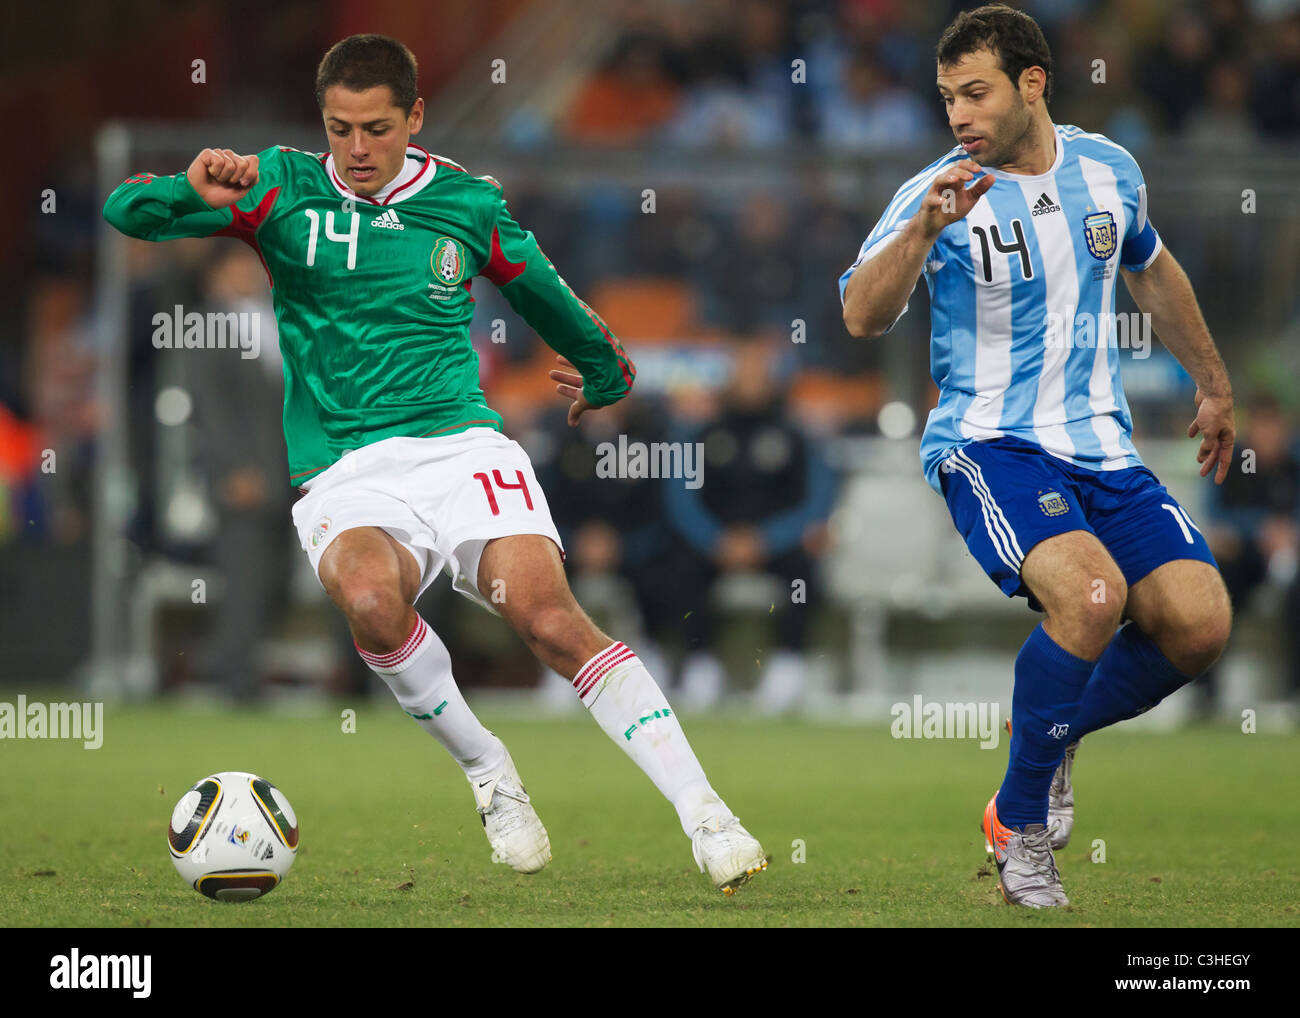 Javier Hernandez del Messico (l) cambia direzione contro Javier Mascherano Argentina (r) durante un 2010 World Cup Soccer Match Foto Stock